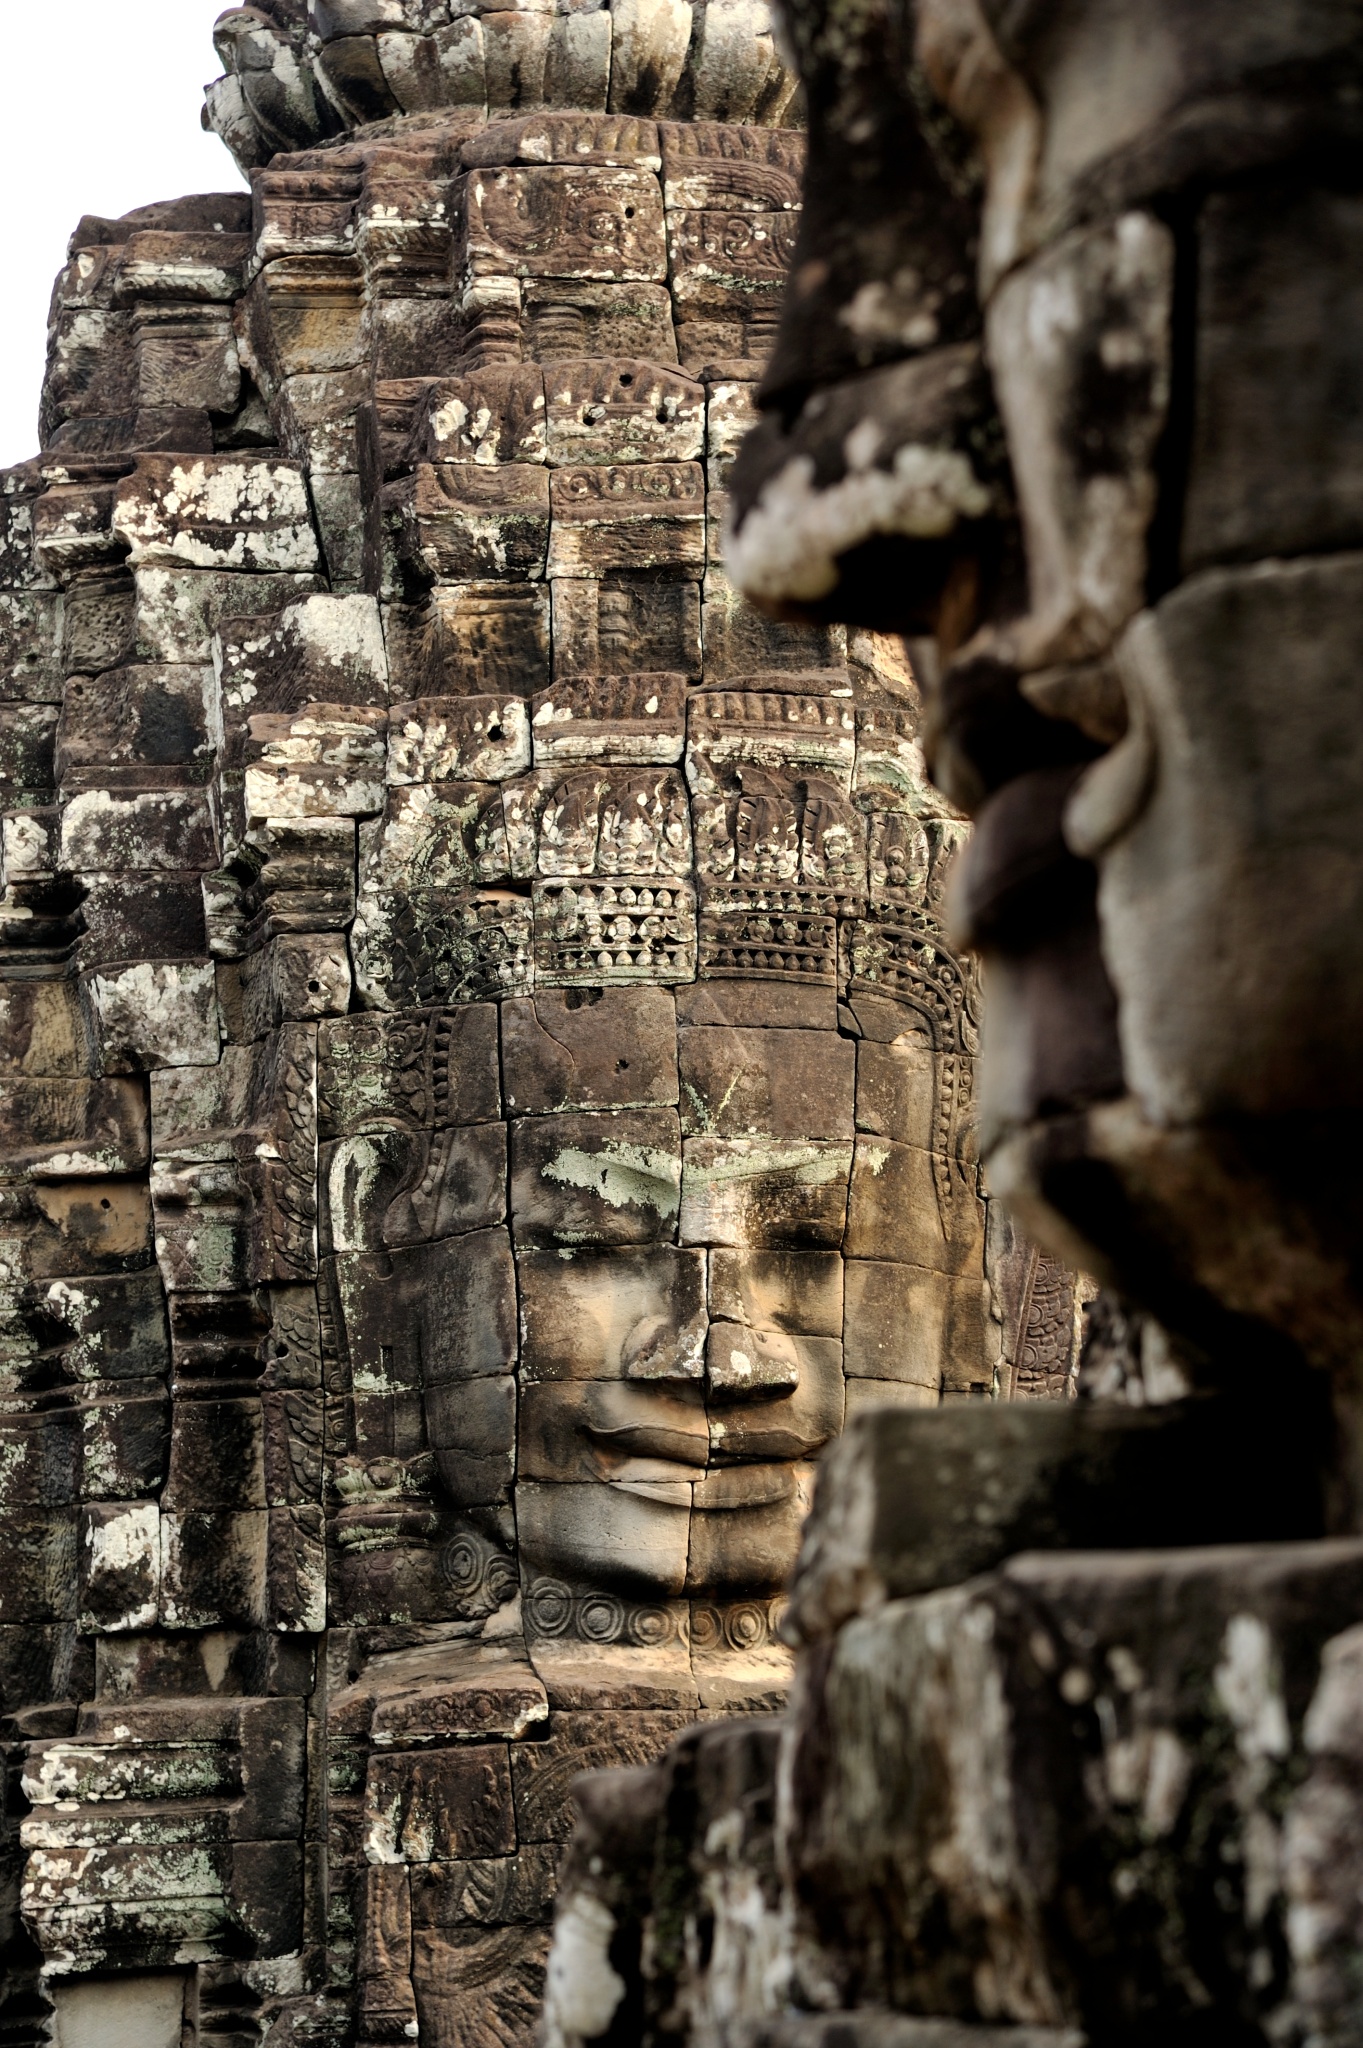 「クメールの微笑み」と讃えられる四面仏塔の菩薩像